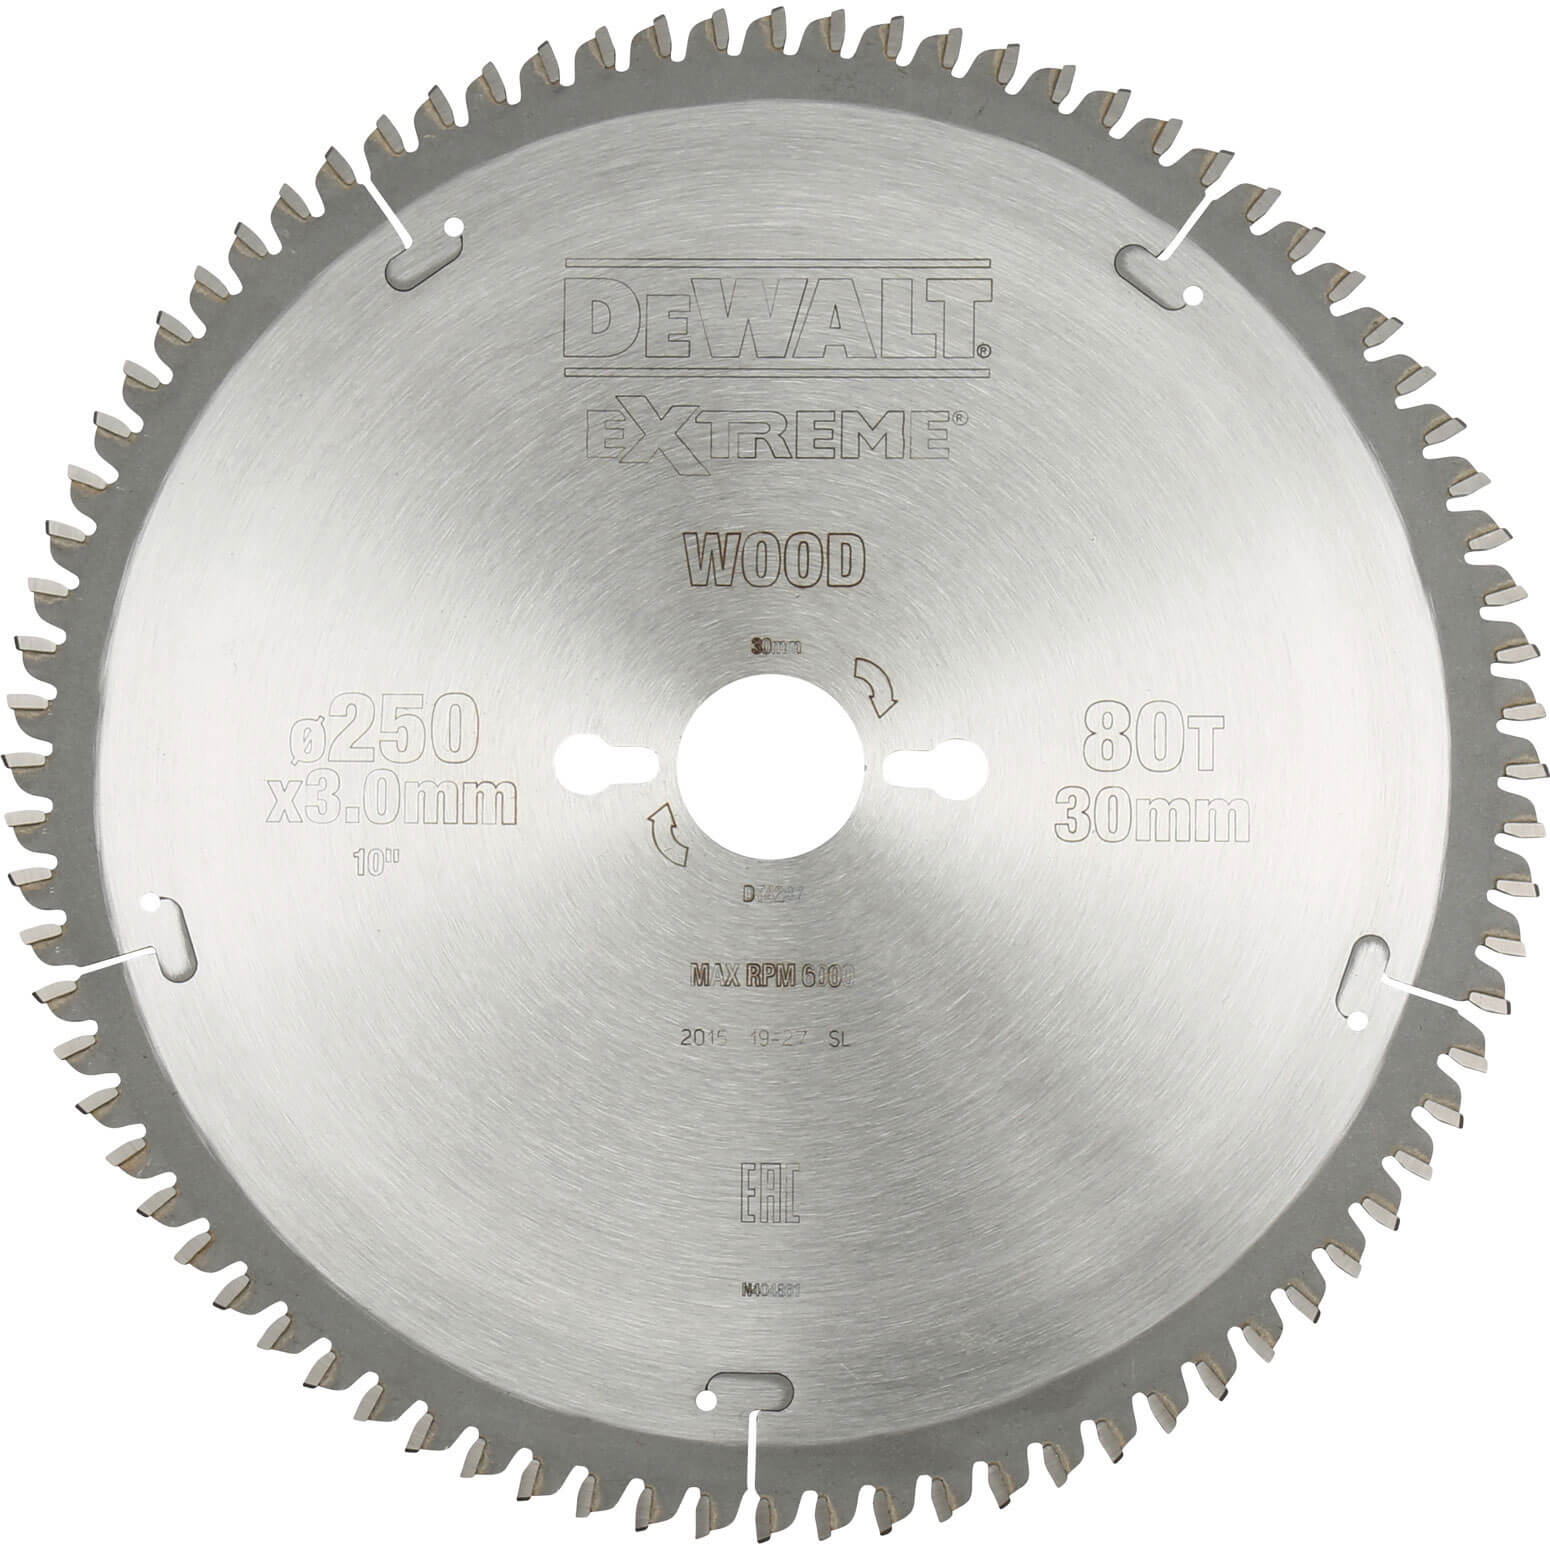 DeWalt Extreme Wood Cutting Saw Blades 250mm 96T 30mm